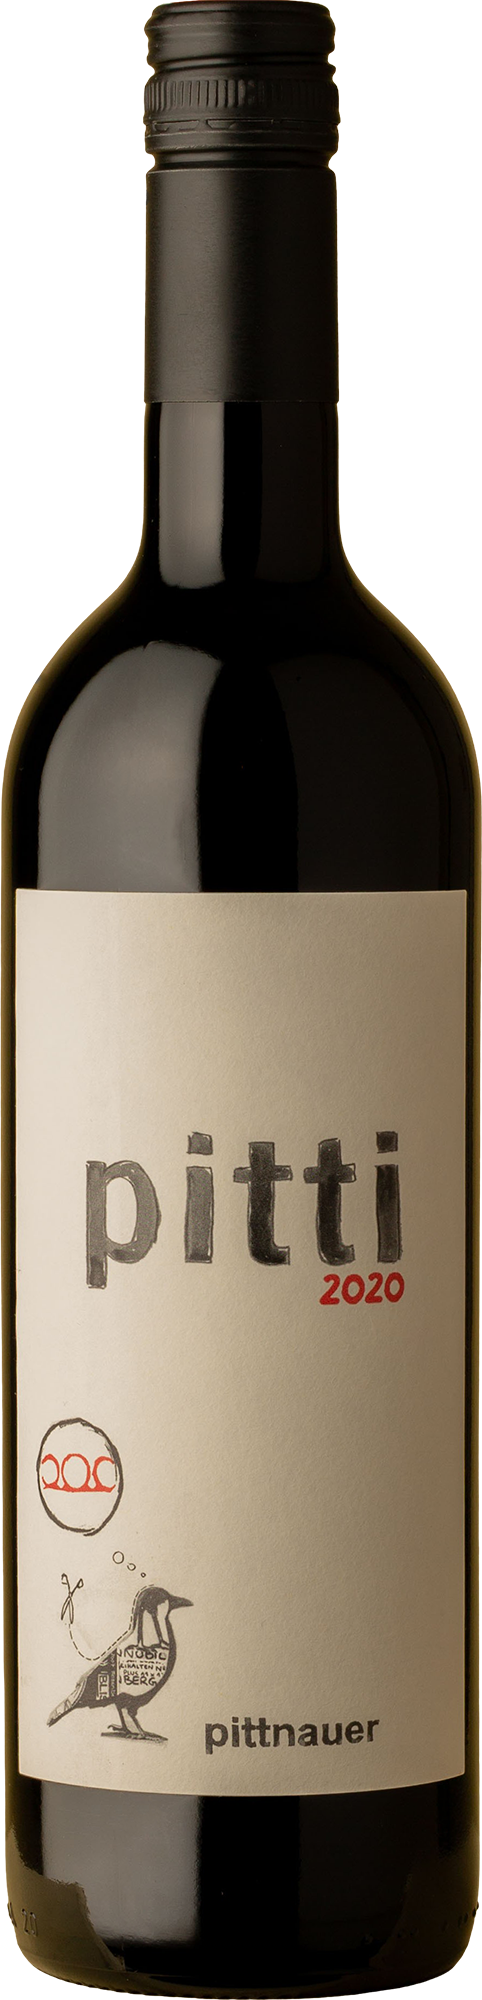 Pittnauer - Pitti Blaufrankisch 2020 Red Wine